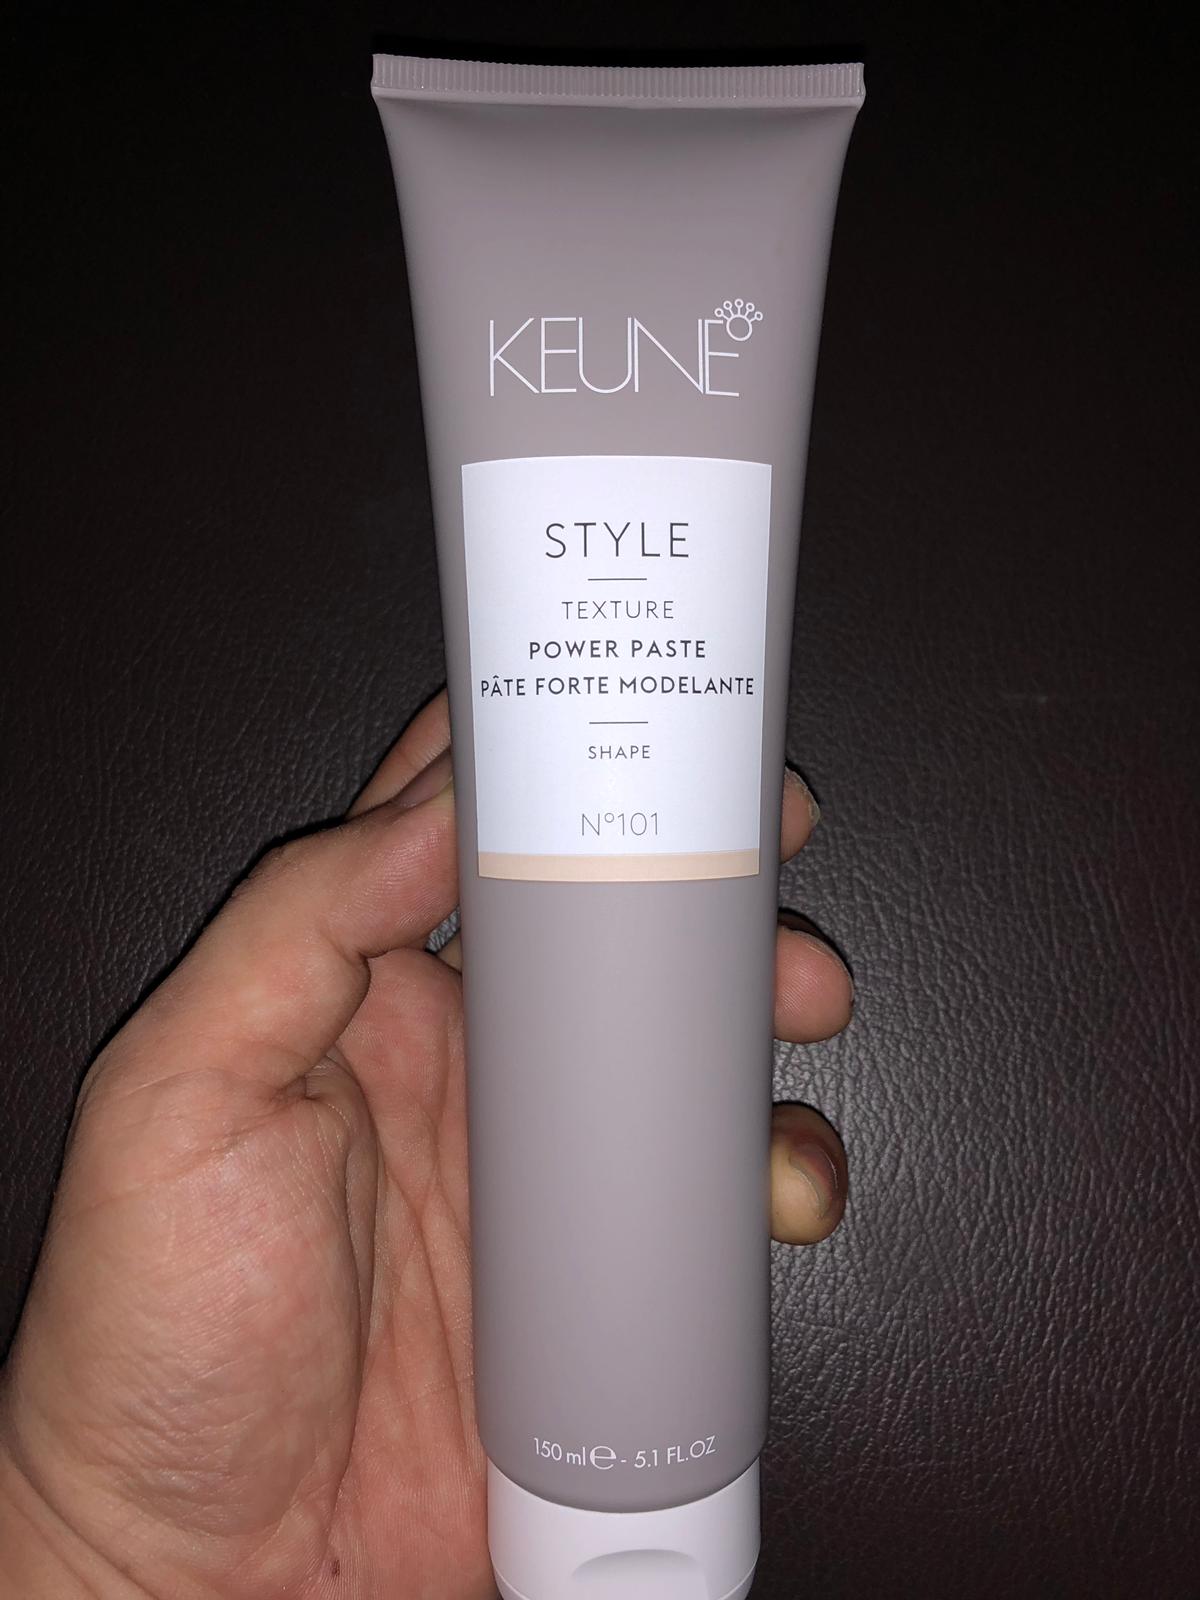 Keune Style - Power Paste, 5.1 fl oz (150ml)